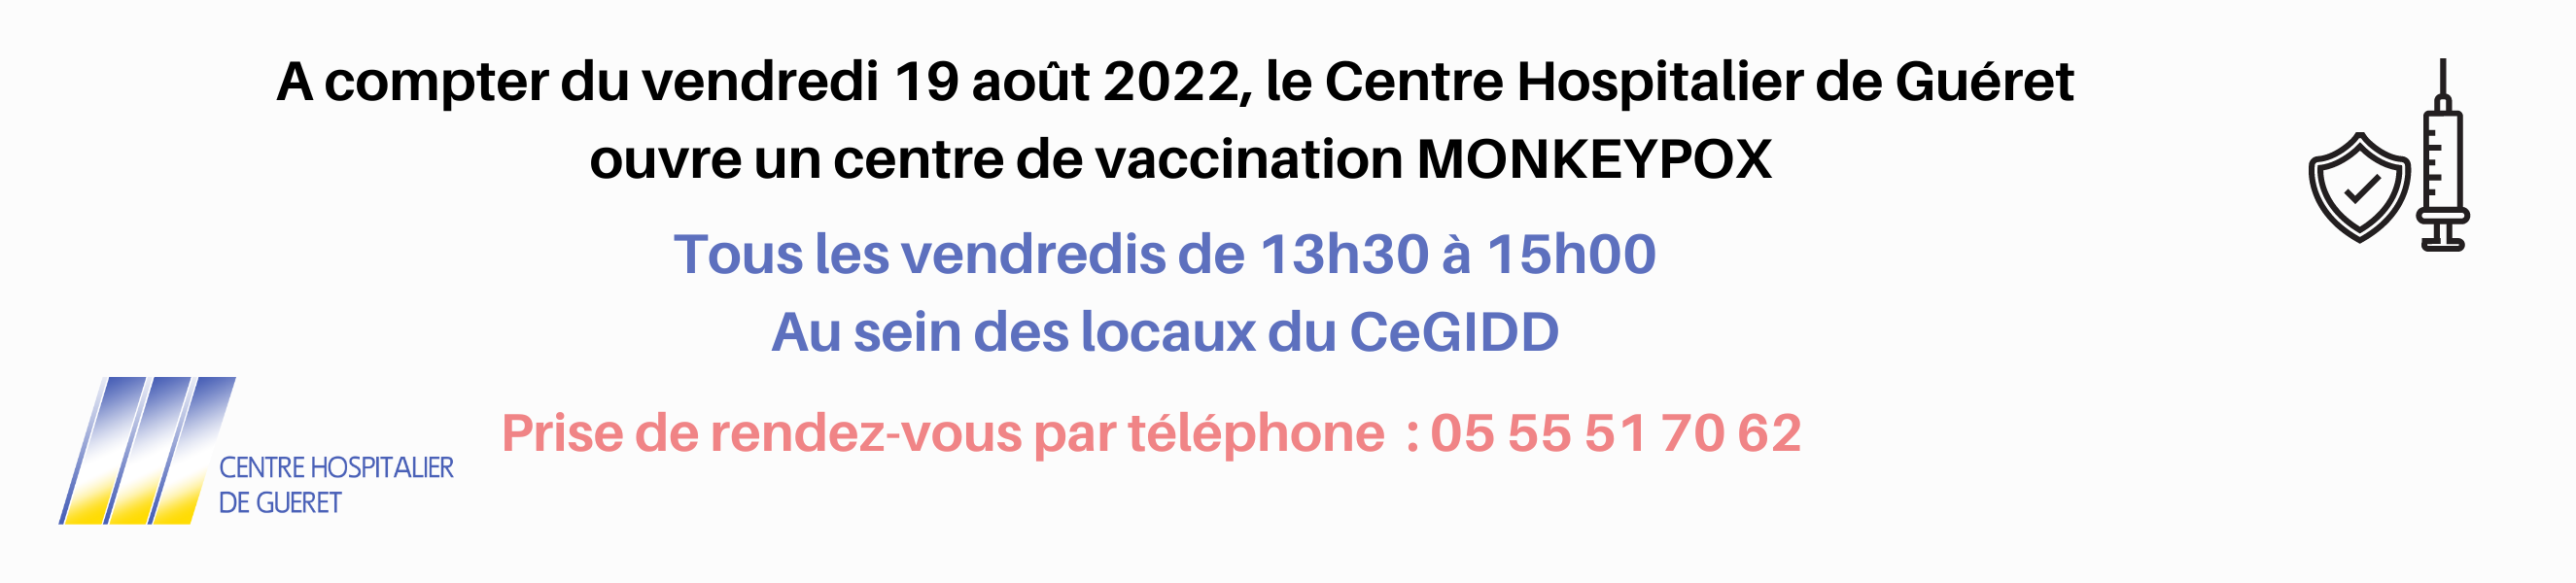 ouverture_centre_de_vaccination_monkeypox